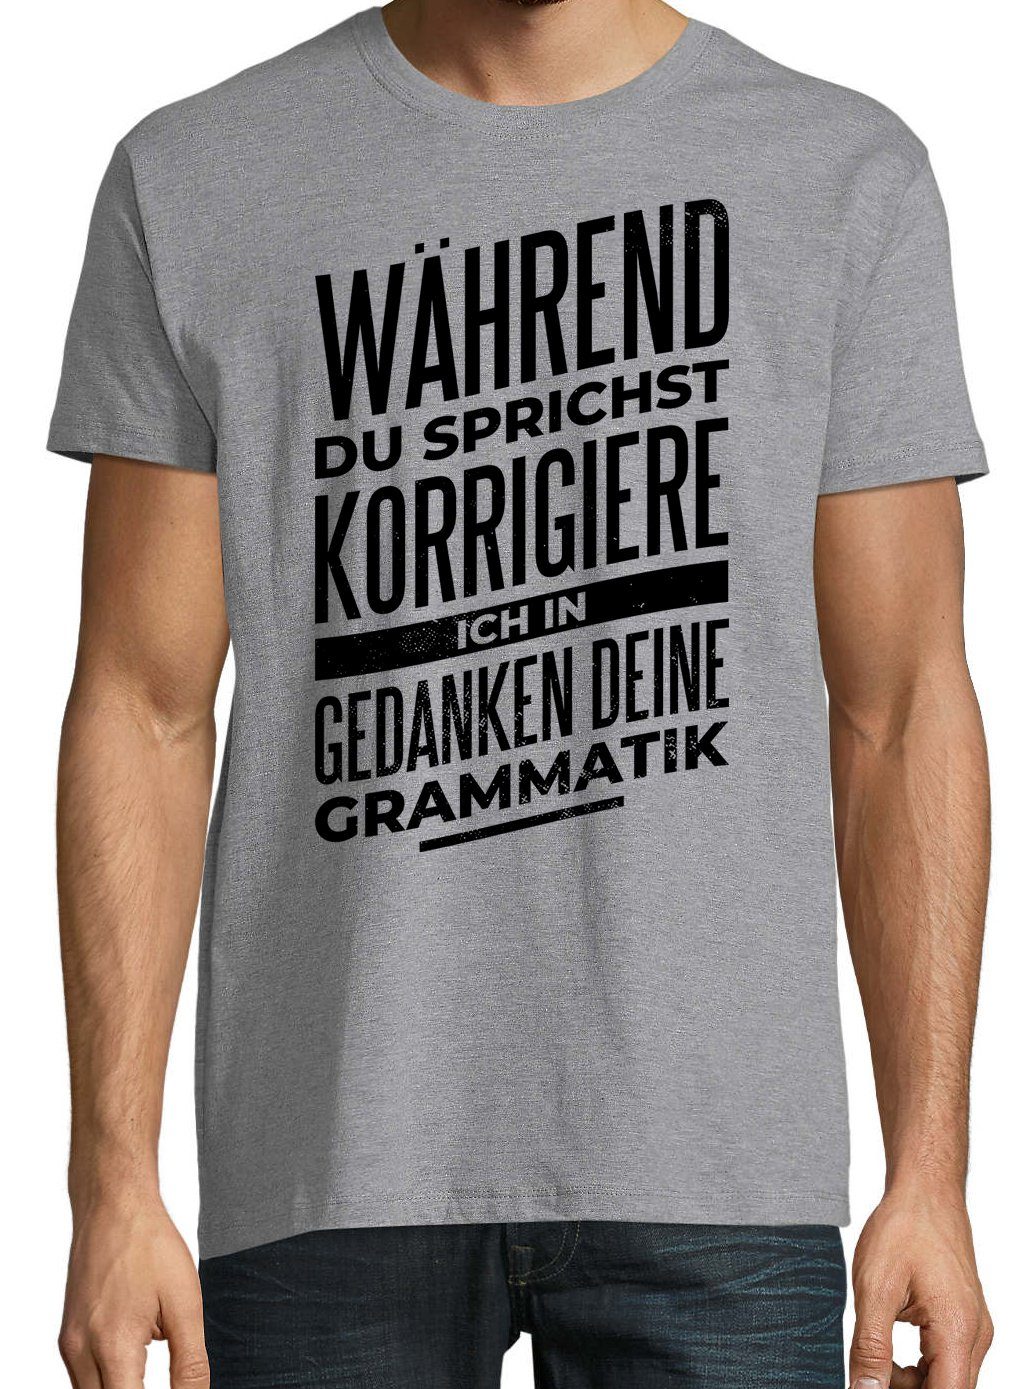 Grammatik Grau trendigem Ich mit Frontprint T-Shirt Designz Shirt Herren Youth Deine Korrigiere